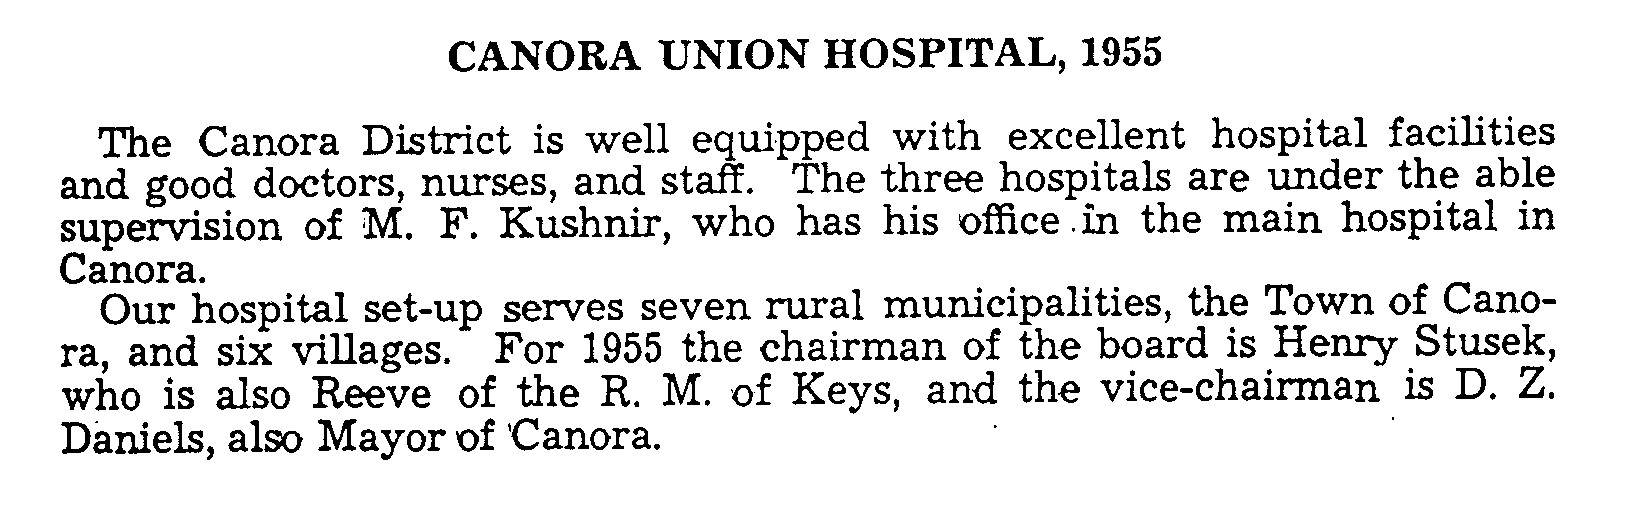 Historical Background on Canora Union Hospital  1